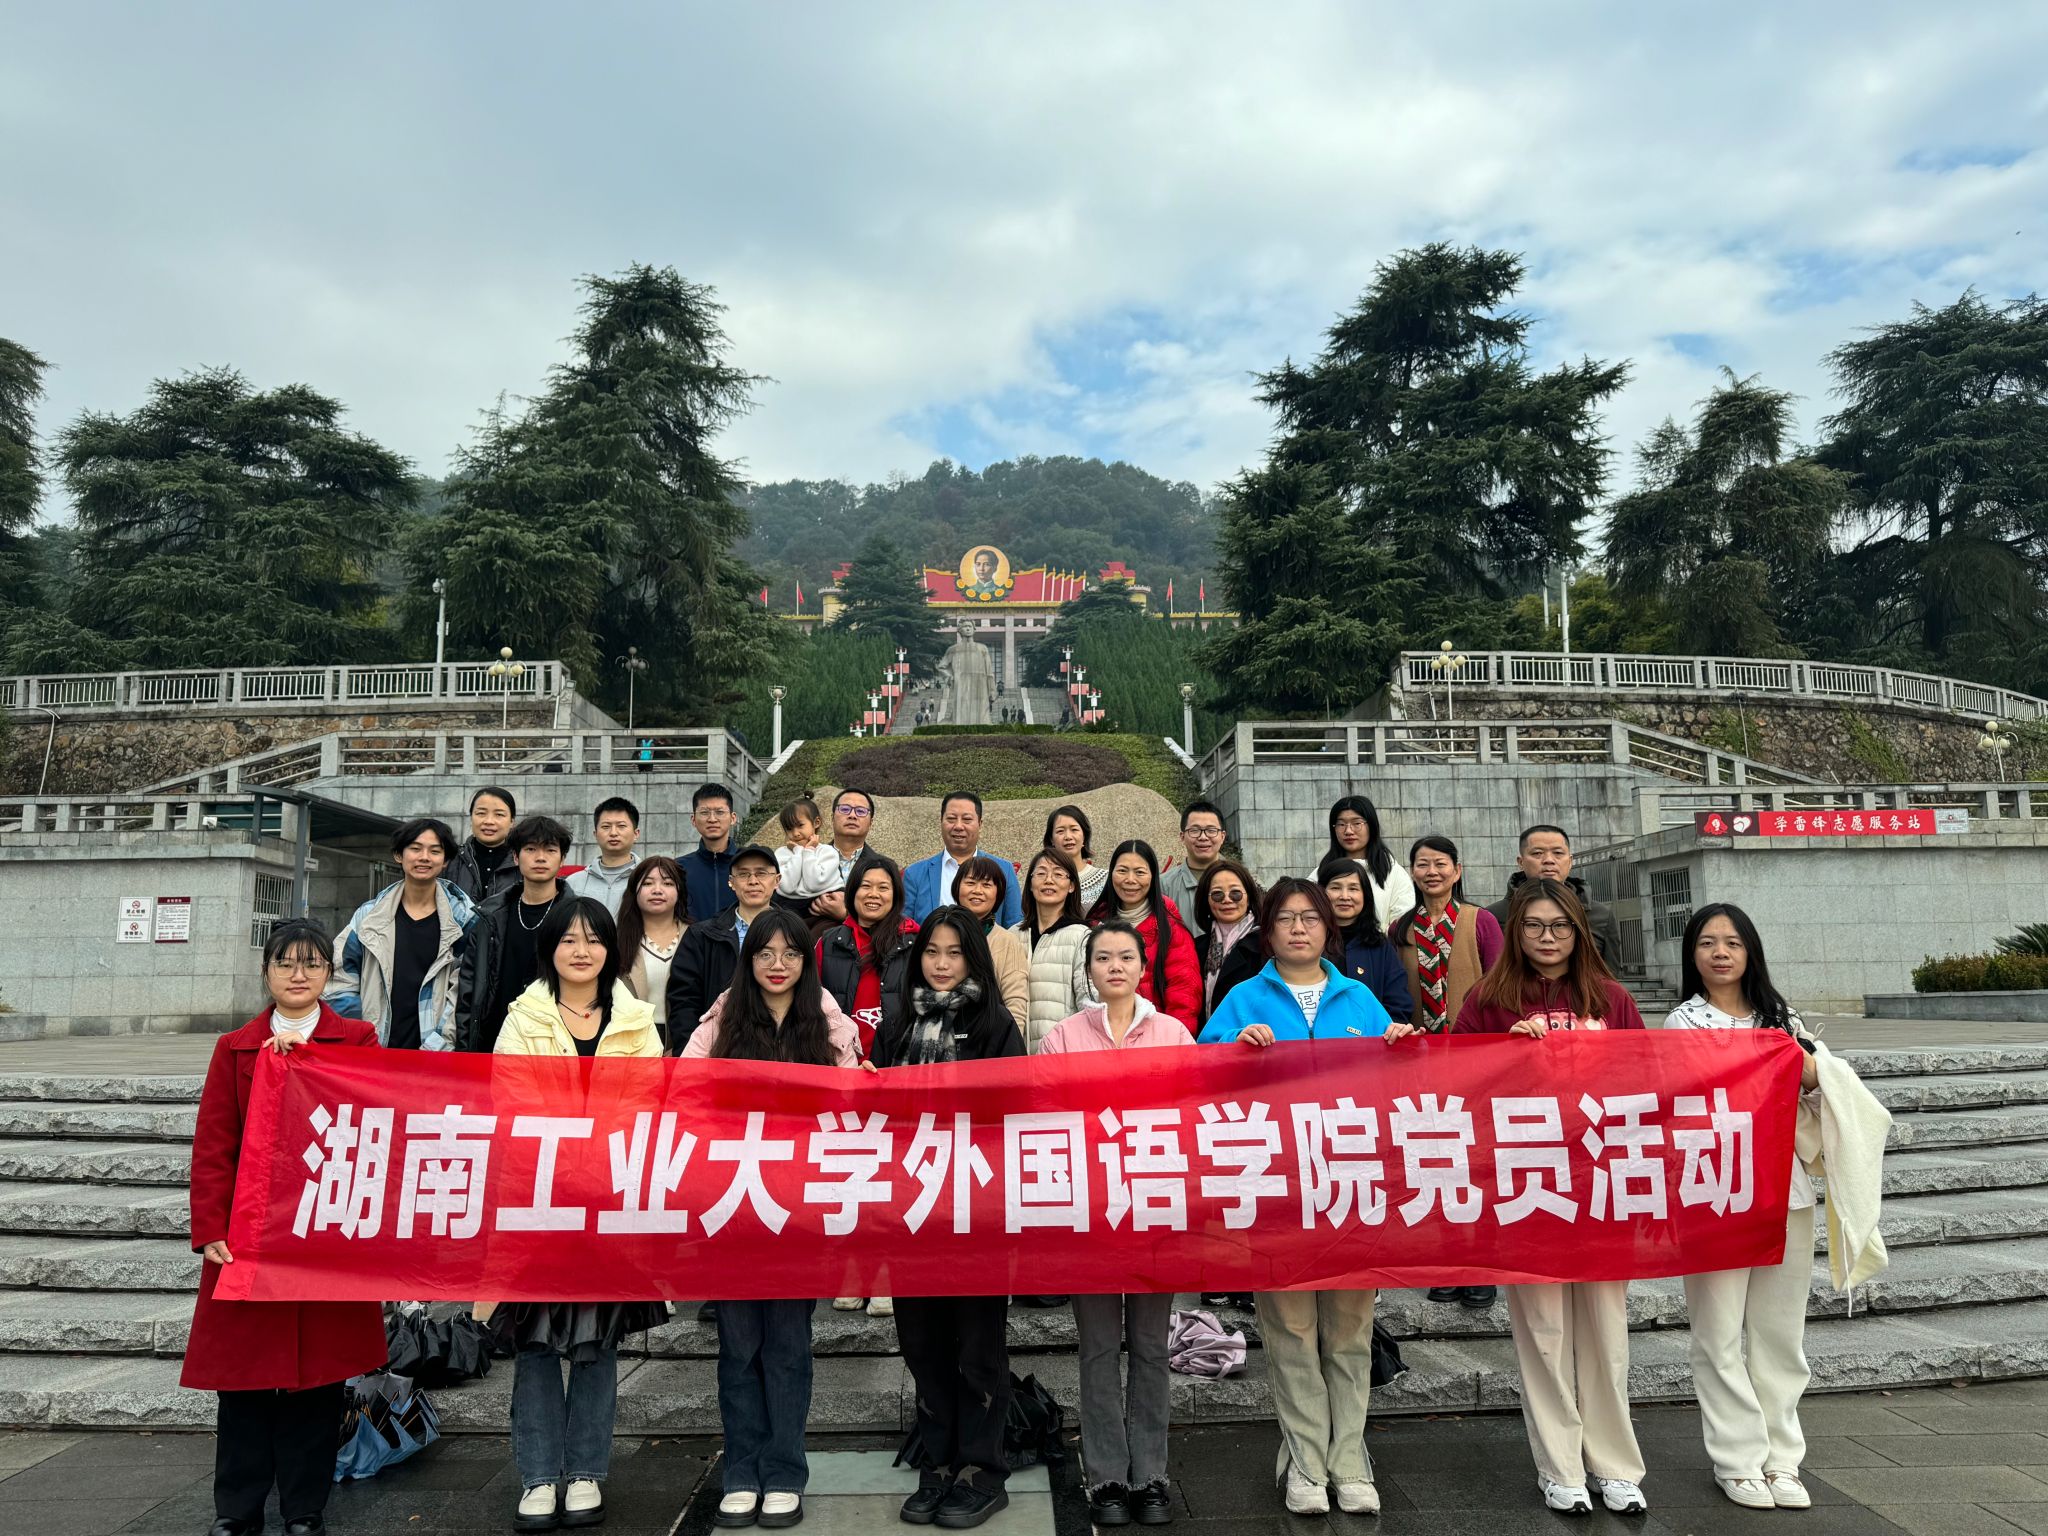 欧美xbox+one第八区组织师生党员赴萍乡开展红色教育活动